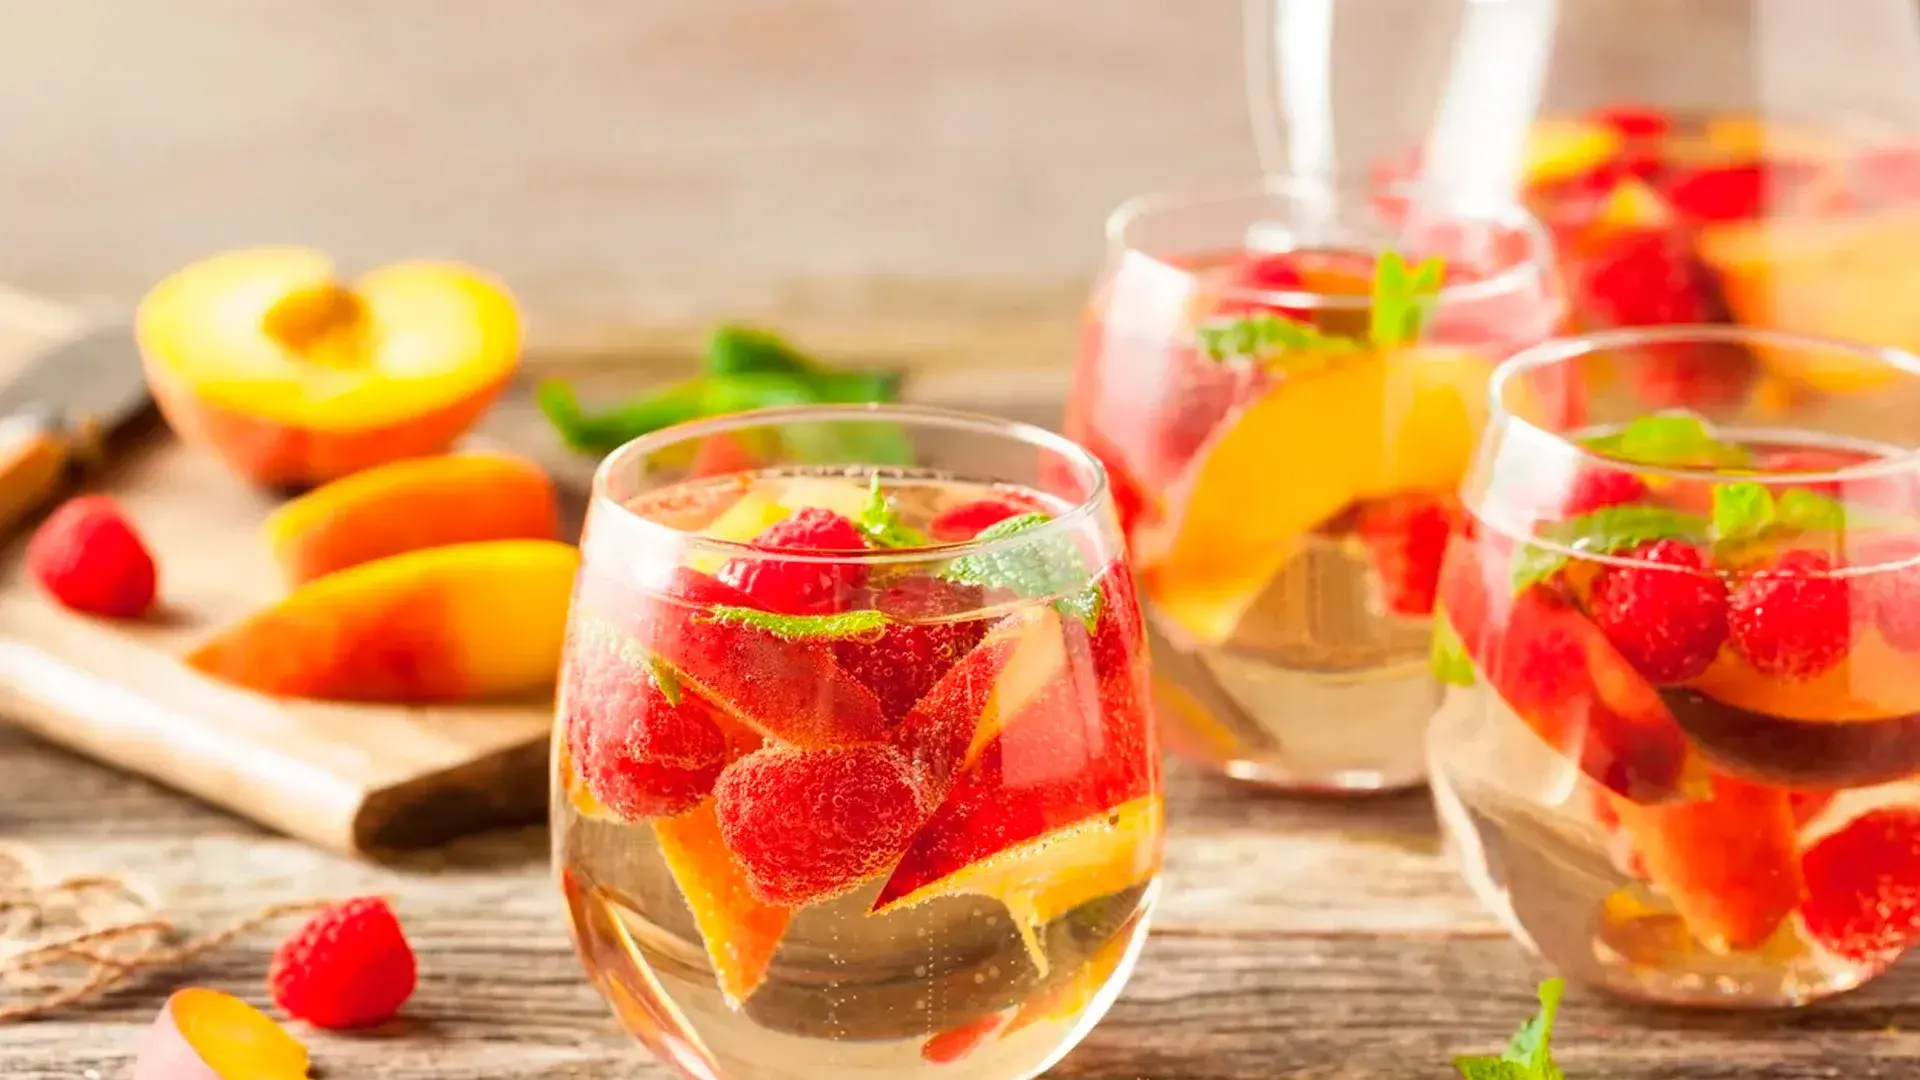 Salada de frutas com champanhe: a receita perfeita para começar o ano novo com estilo!